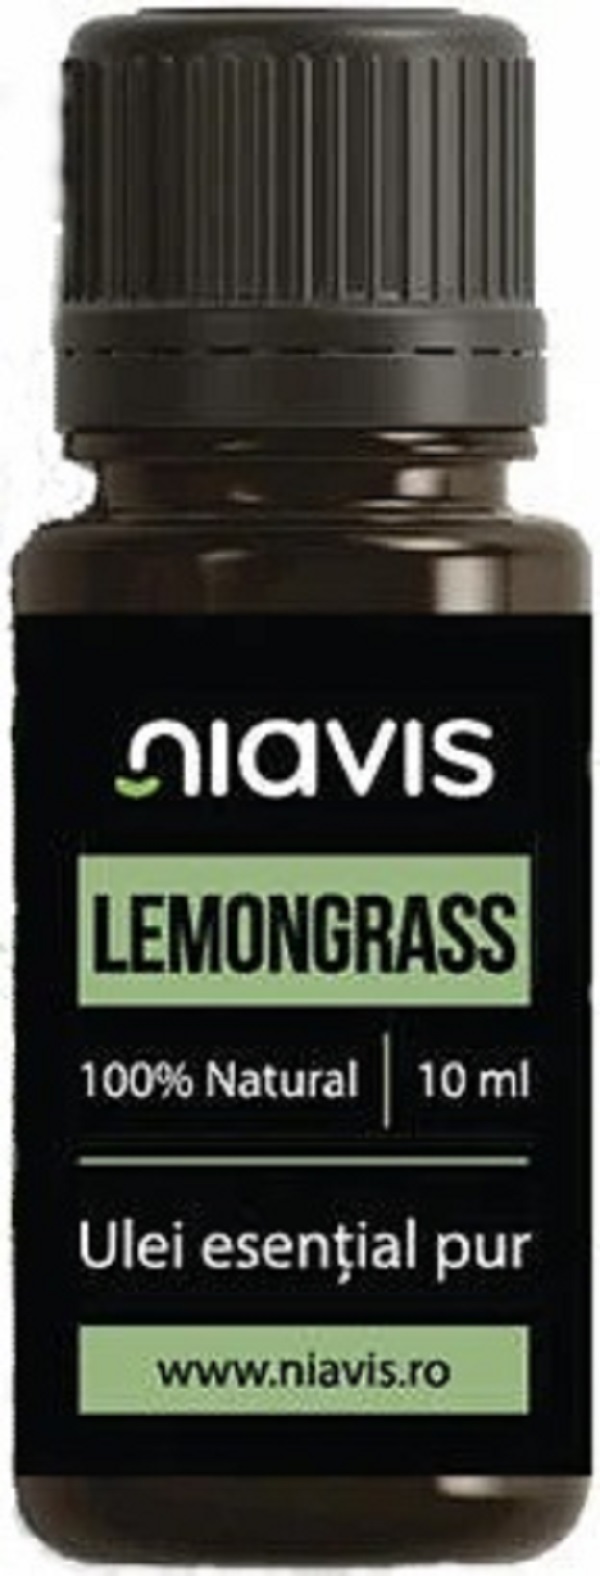 Ulei esential: Lemongrass 10 ml